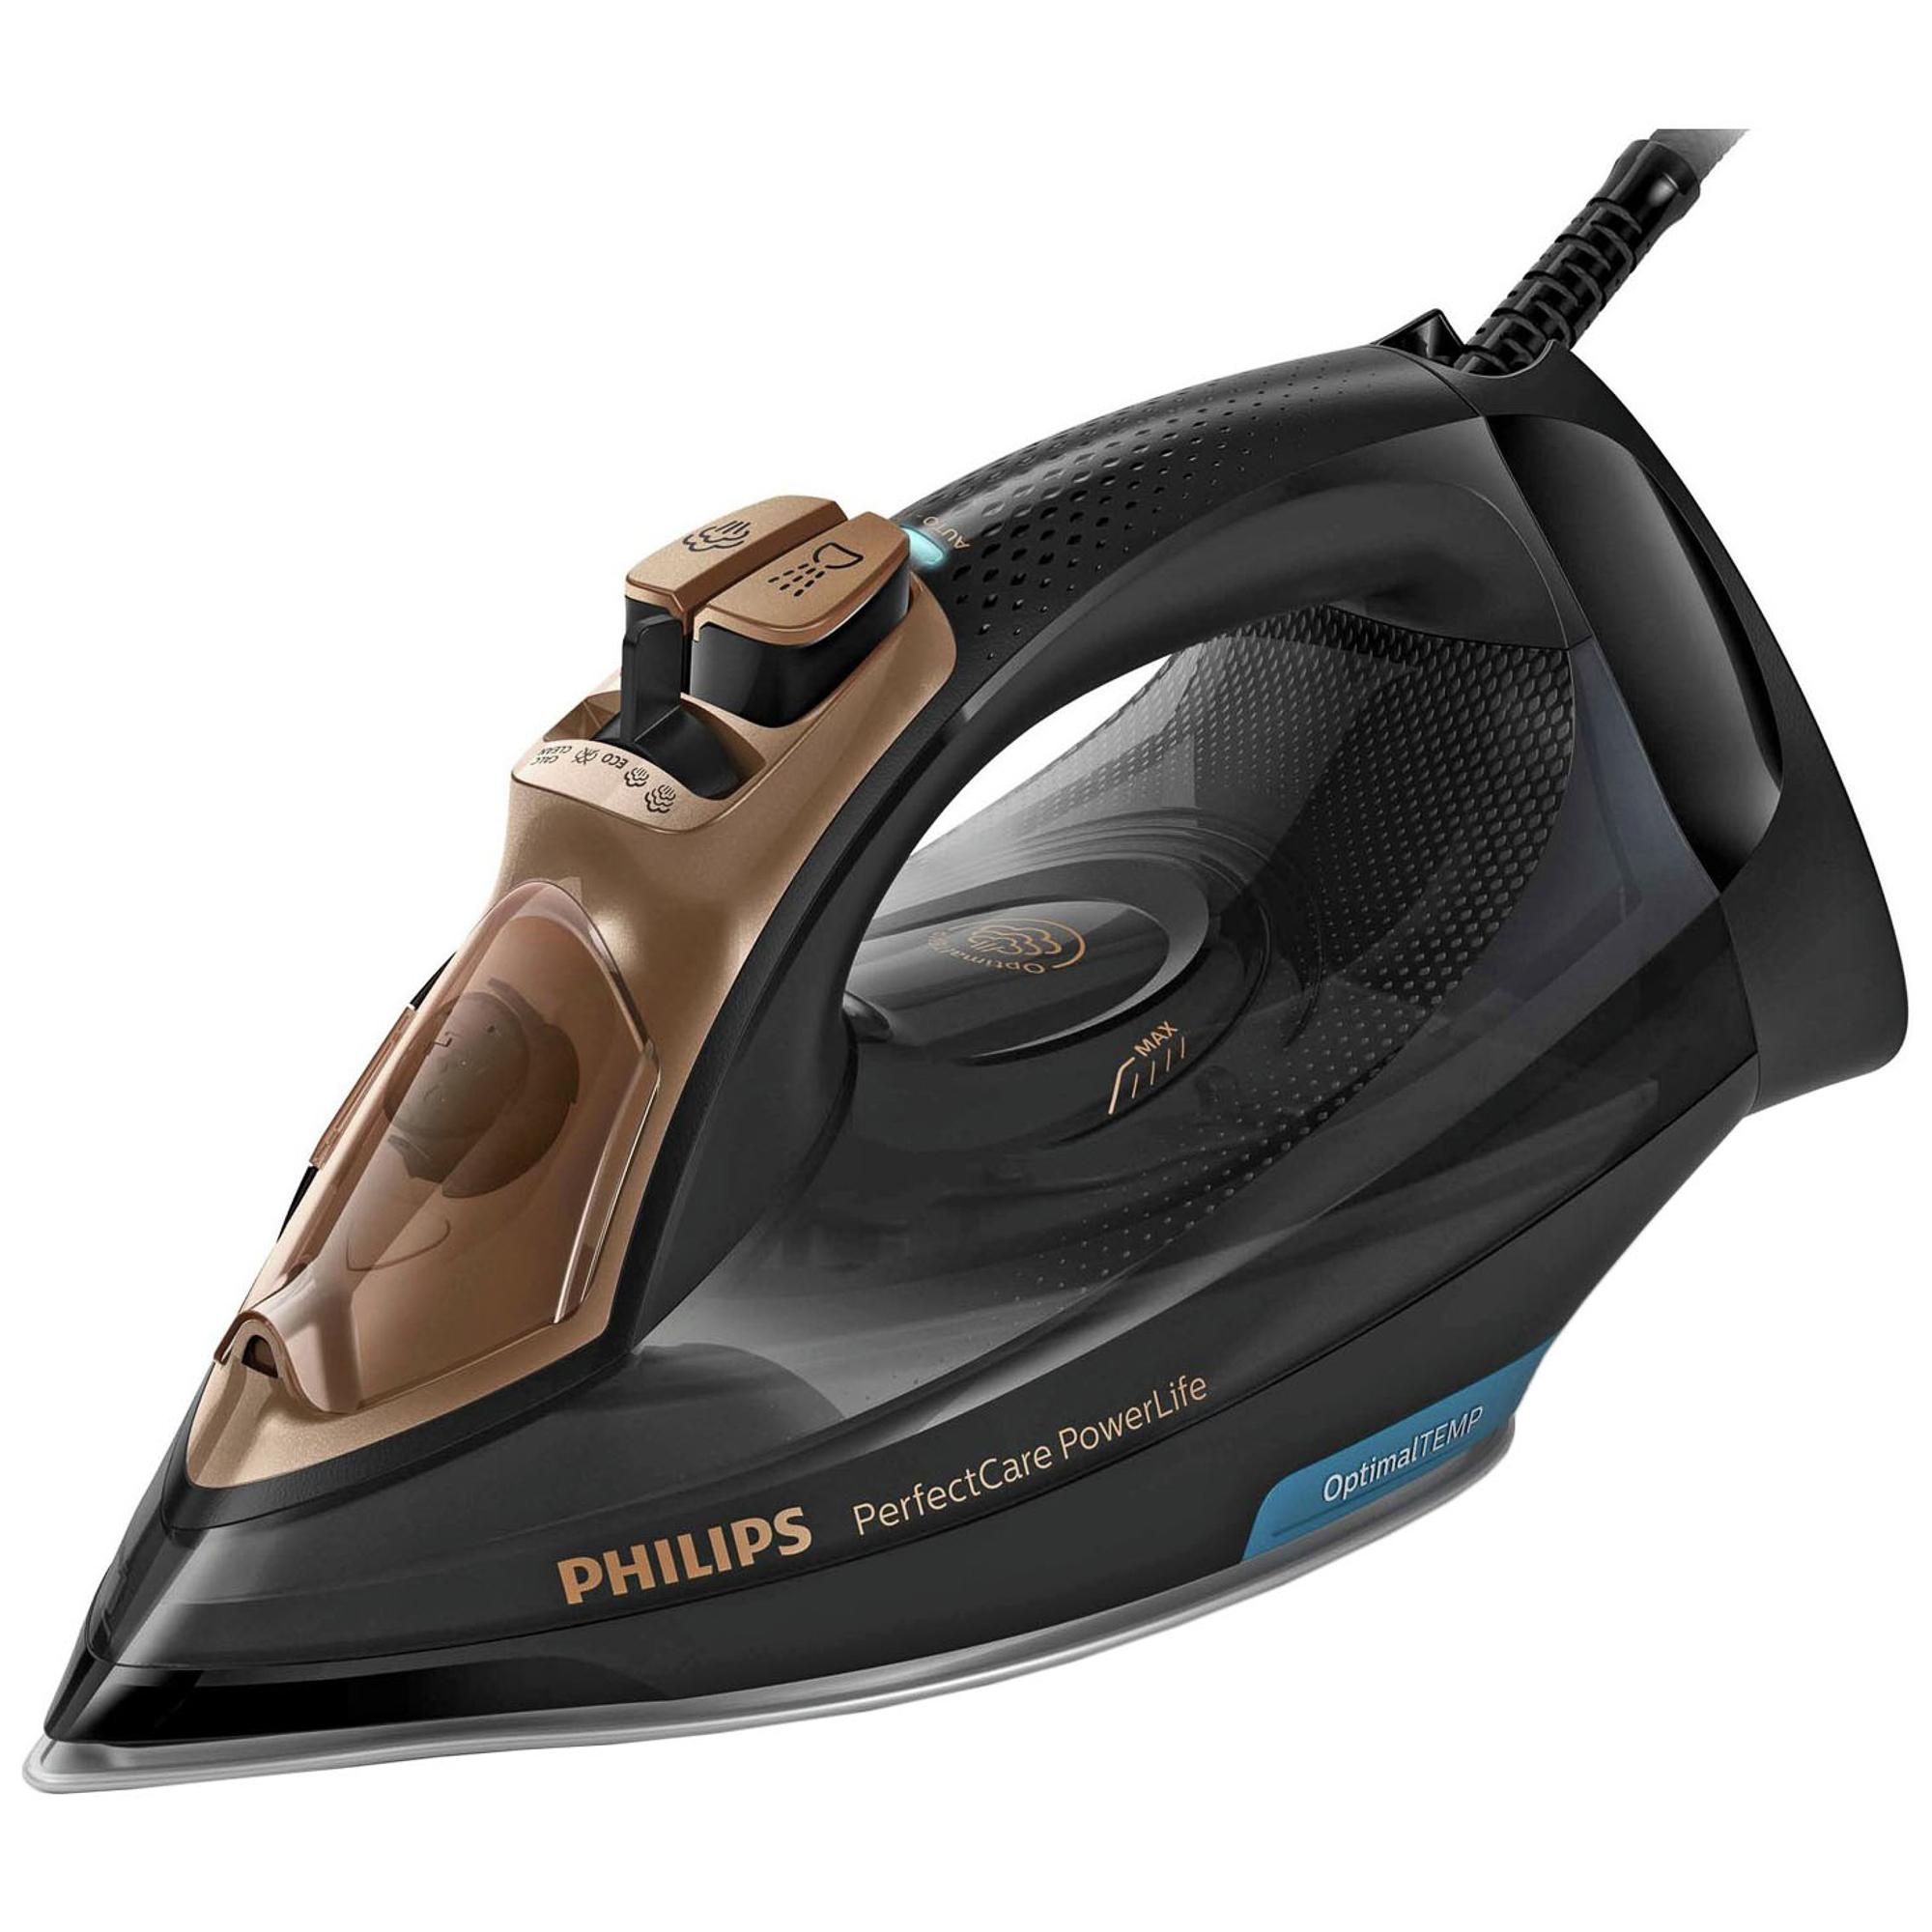 Philips perfectcare купить. Утюг Philips gc3929/64. Утюг Philips PERFECTCARE. Утюг Philips PERFECTCARE POWERLIFE. Утюг Philips PERFECTCARE POWERLIFE 2400.